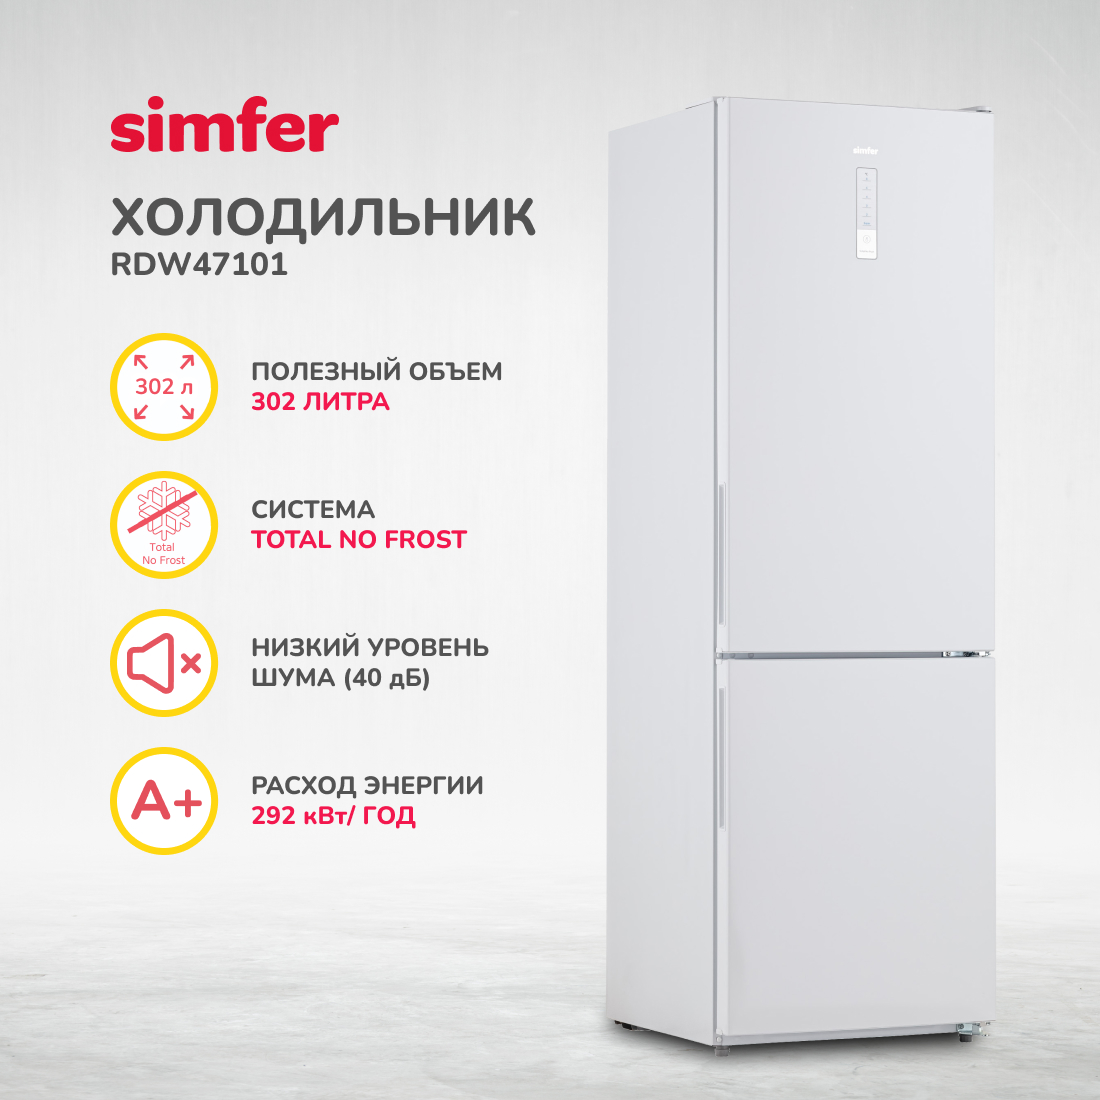 Холодильник Simfer RDW47101, No Frost, двухкамерный, 302 л холодильник simfer rdw49101 no frost двухкамерный 321 л